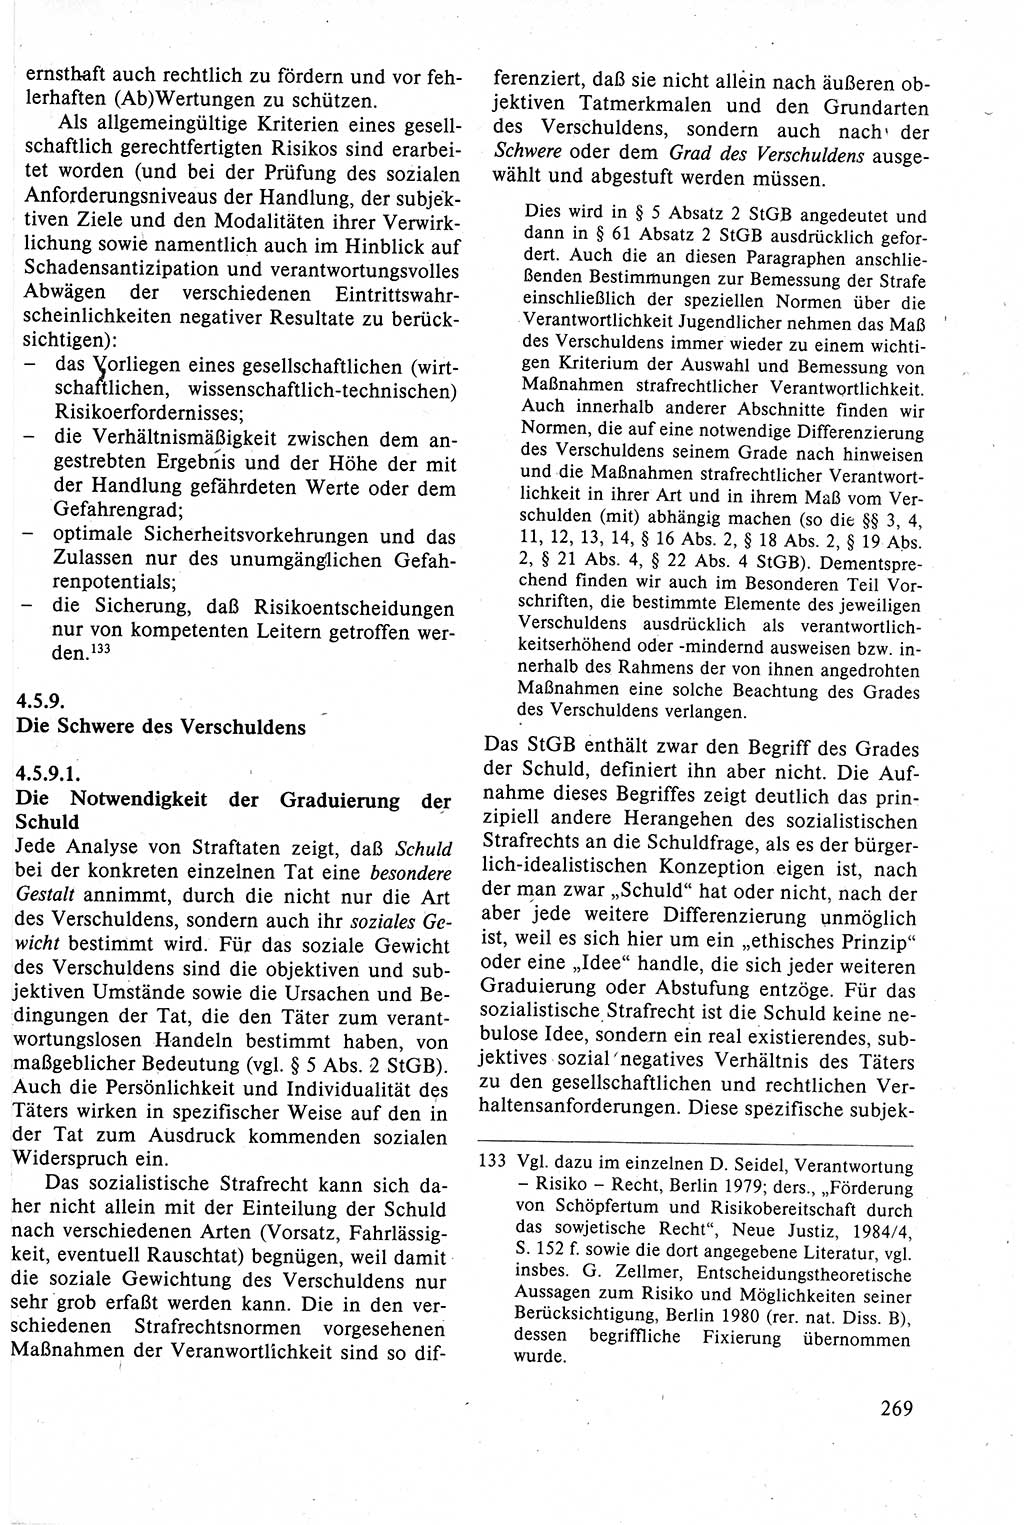 Strafrecht der DDR (Deutsche Demokratische Republik), Lehrbuch 1988, Seite 269 (Strafr. DDR Lb. 1988, S. 269)